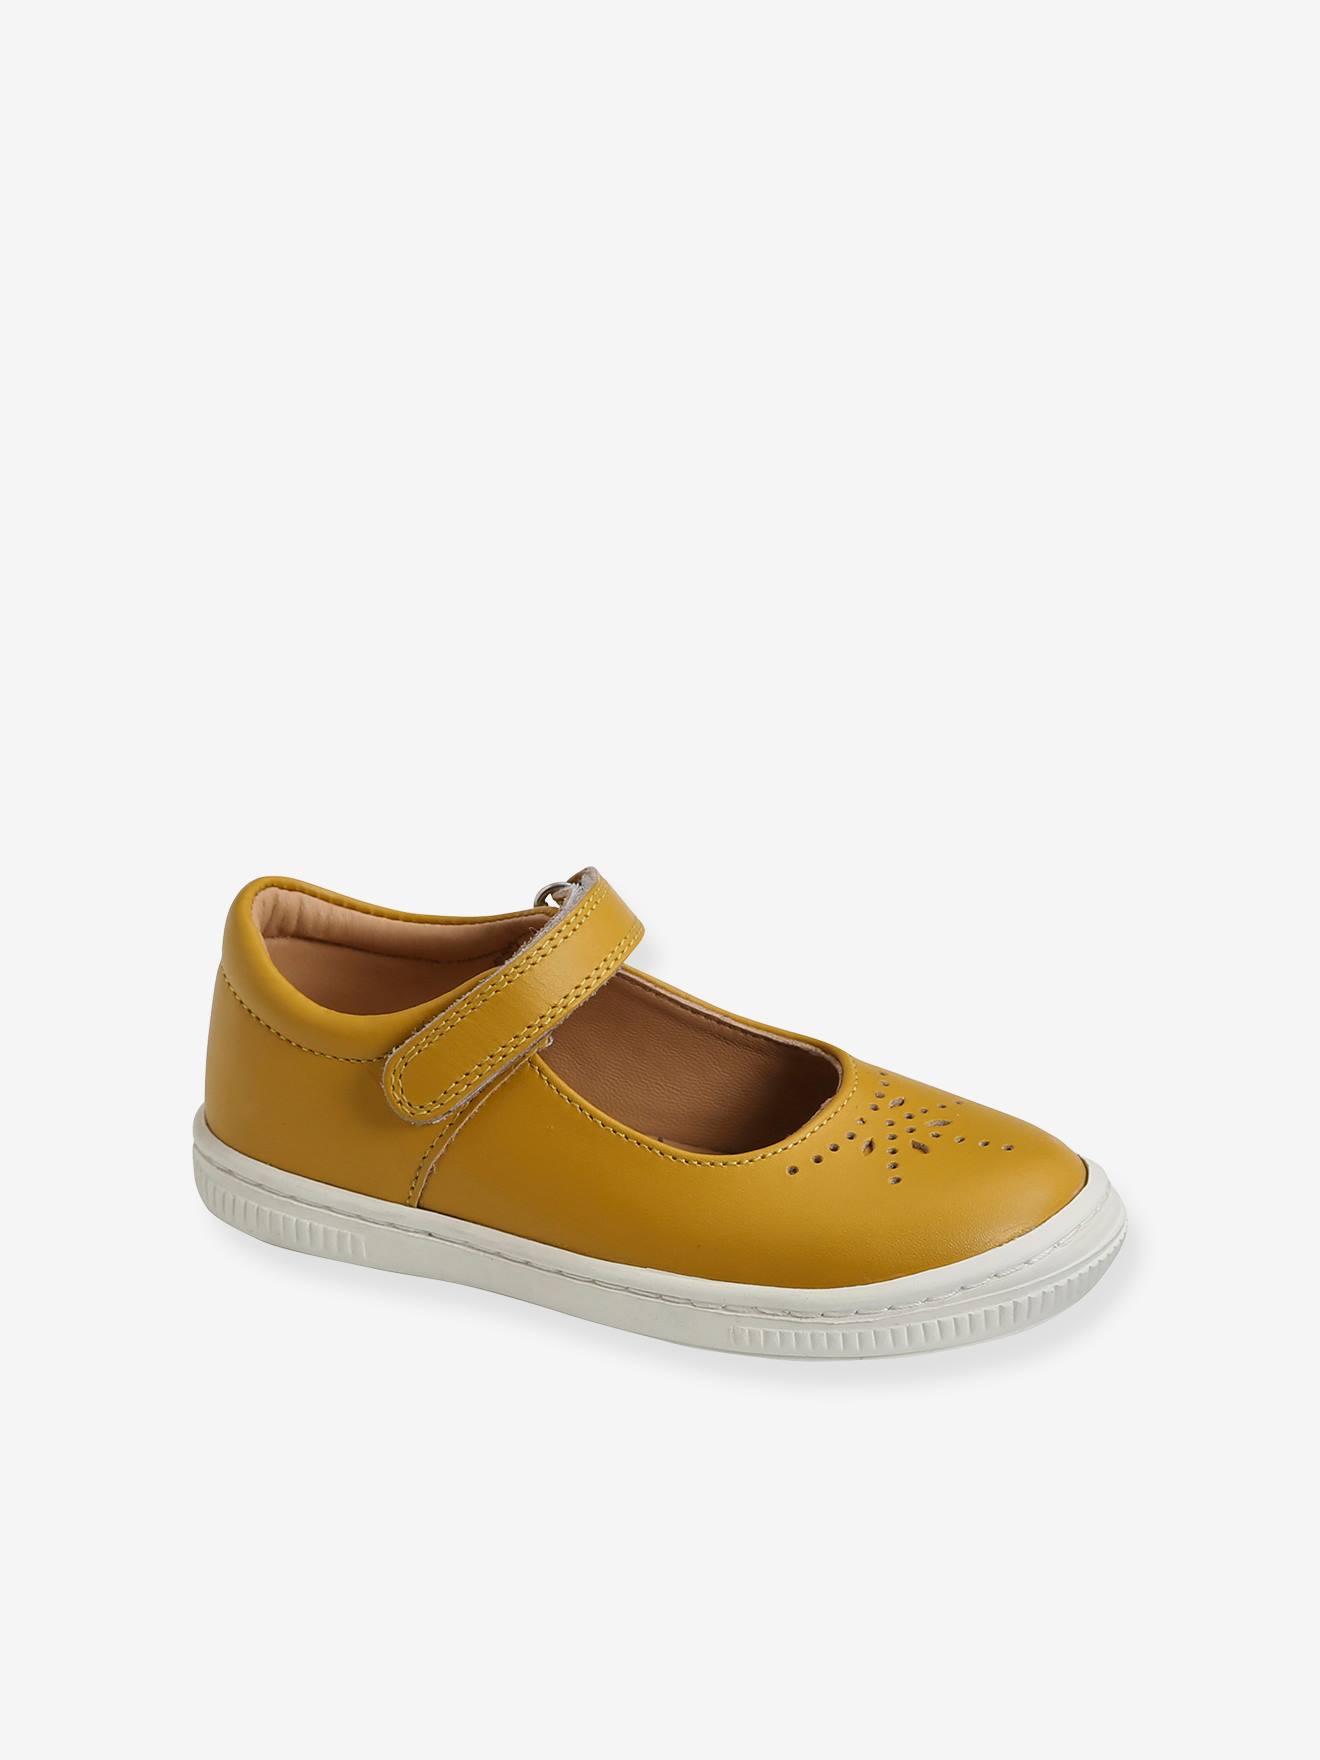 VERTBAUDET Zapatos tipo babies de piel para niña especial autonomía amarillo oscuro liso